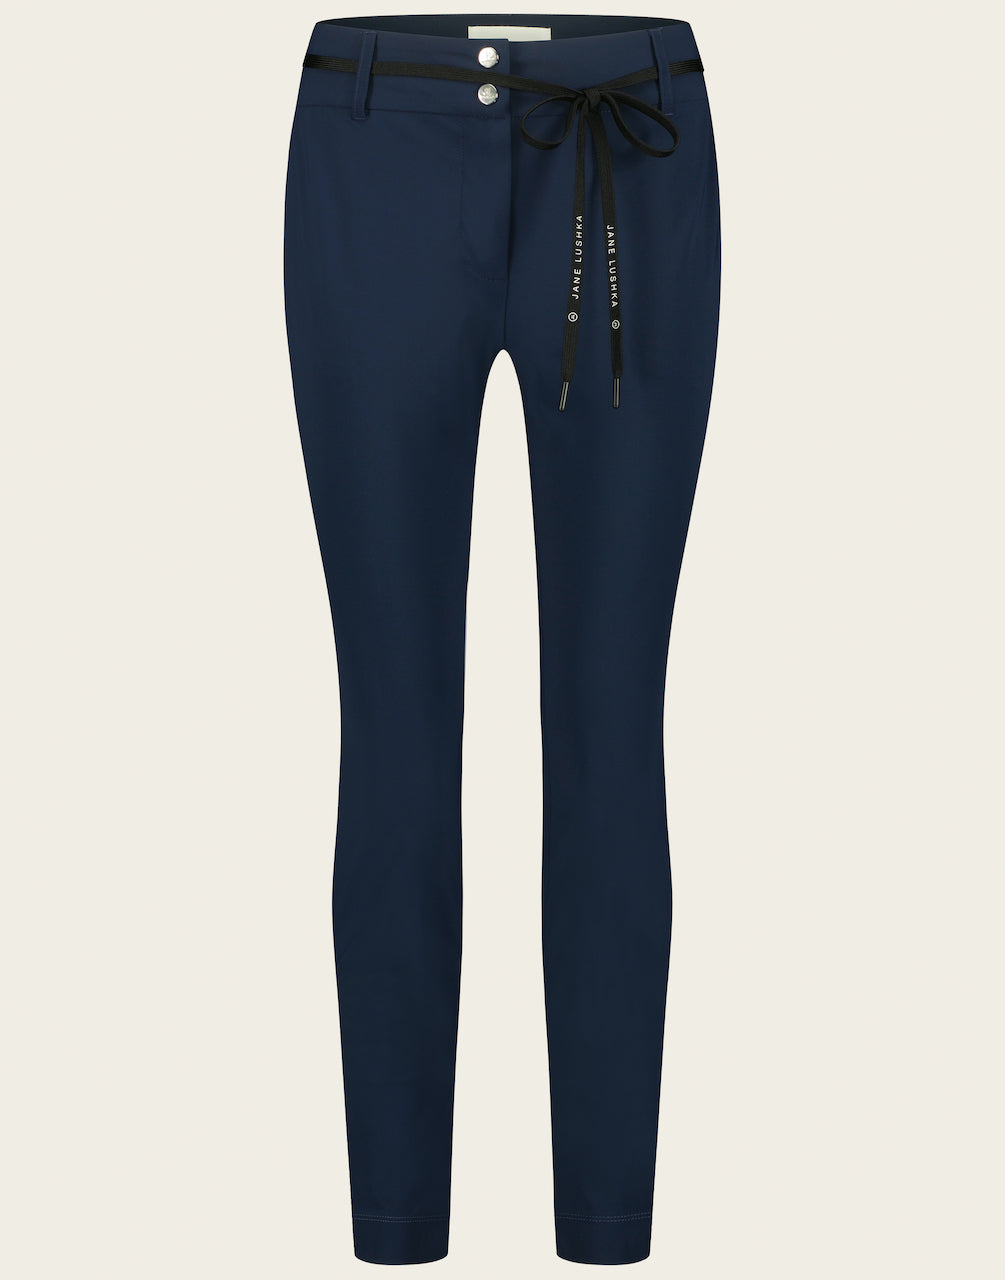 Blauwe Broek Dalas U2222146 van Jane Lushka is een mooie tijdloze broek uit de collectie van Jane Lushka. Deze broek heeft een nauwsluitende fit, een smalle en kortere pijp, met een veter van Jane Lushka als ceintuur.   De broek is uitgevoerd in de kleur Jeans, donkerblauw en is van de bekende travel kwaliteit. Broek Dalas is verkrijgbaar in verschillende kleuren: Black en Jeans.